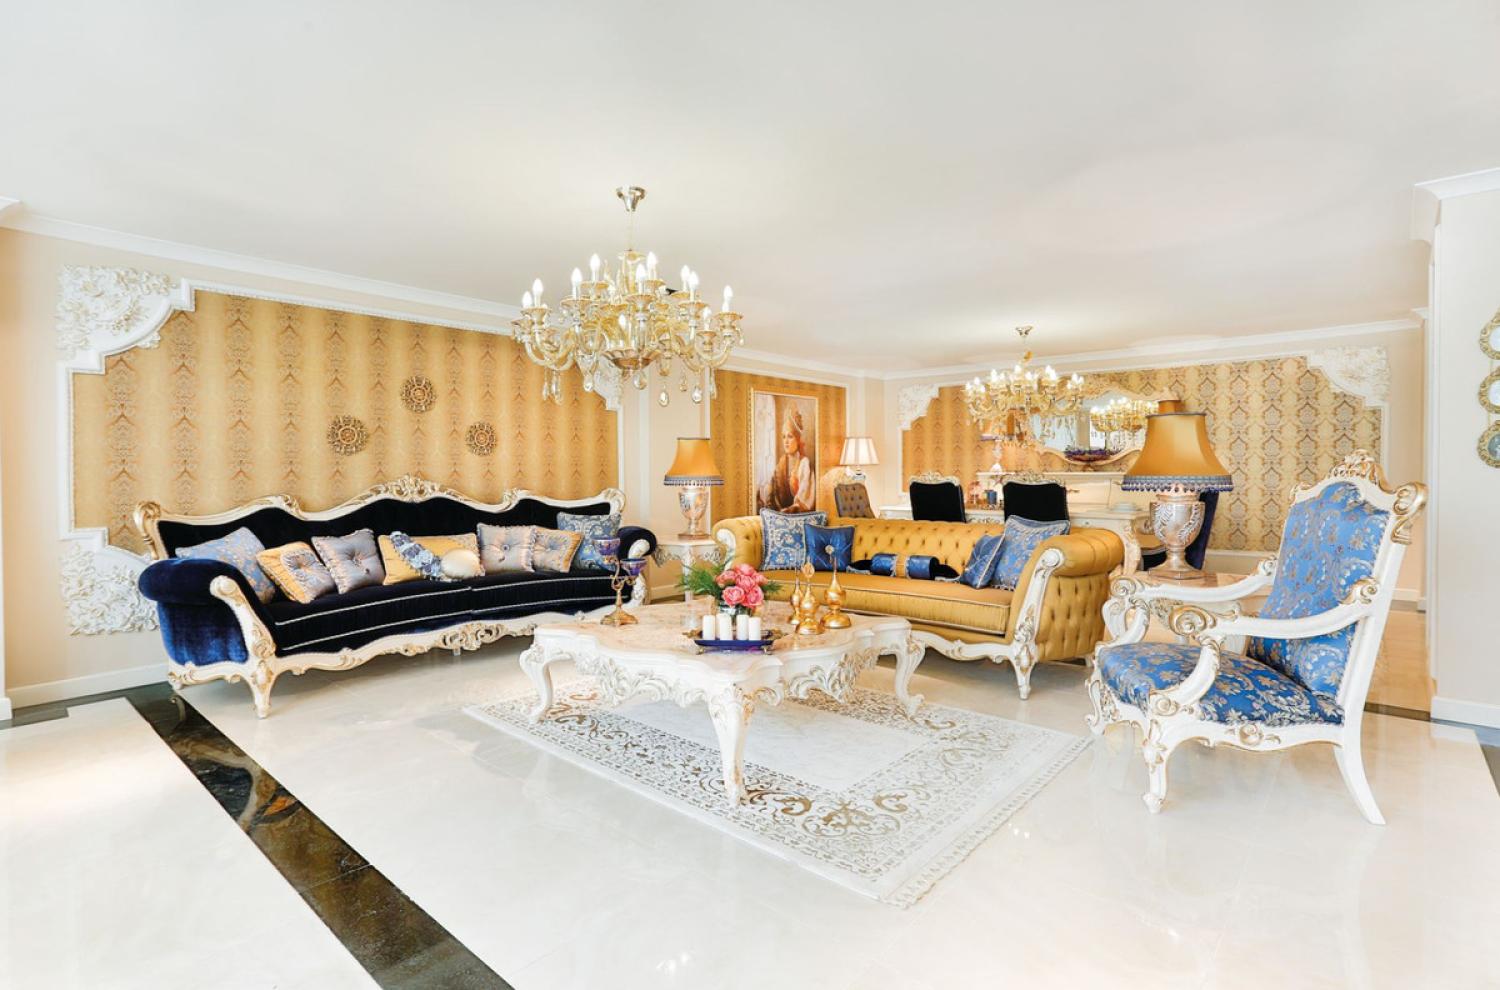 Casa Padrino Luxus Barock Wohnzimmer Set Blau / Weiß / Gold - 2 Sofas & 2 Sessel & 1 Couchtisch & 2 Beistelltische - Wohnzimmer Möbel im Barockstil - Edel & Prunkvoll Bild 1